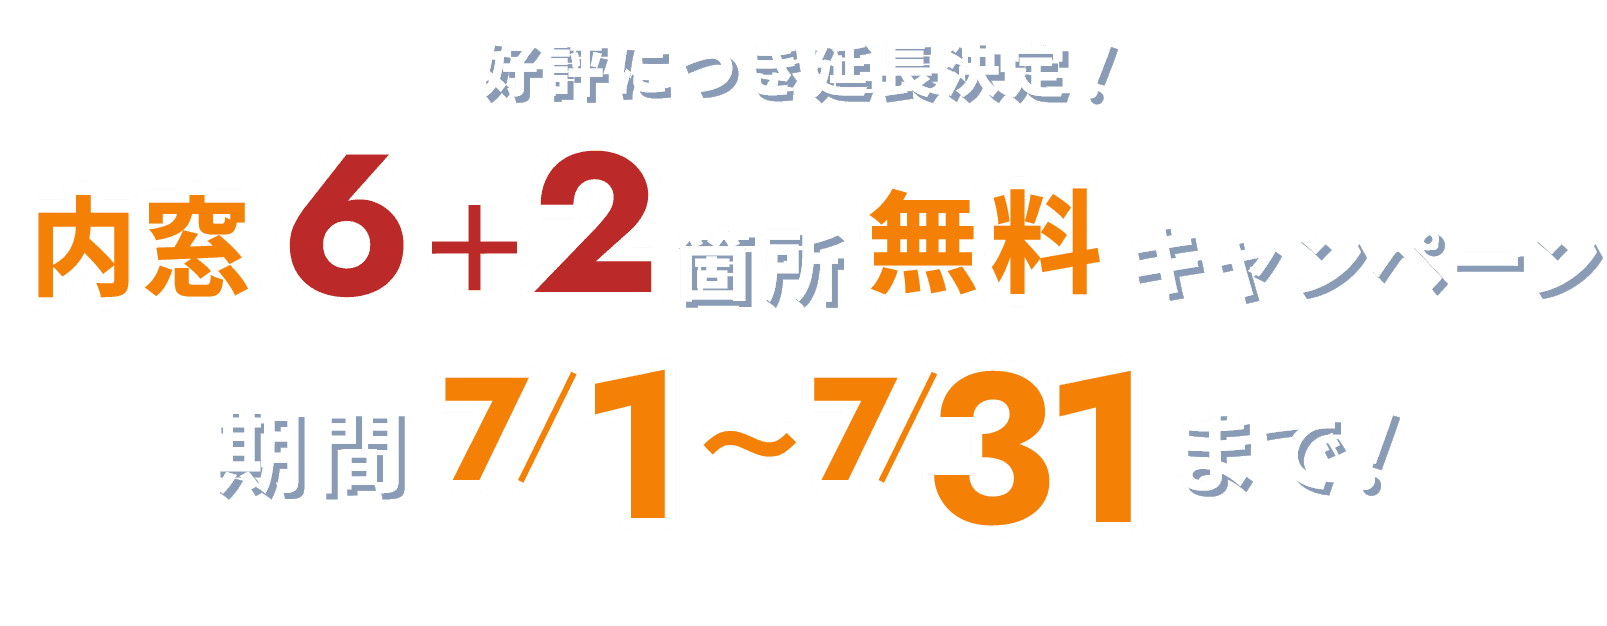 内窓6+2箇所 無料キャンペーン 期間 7/1~7/31まで!